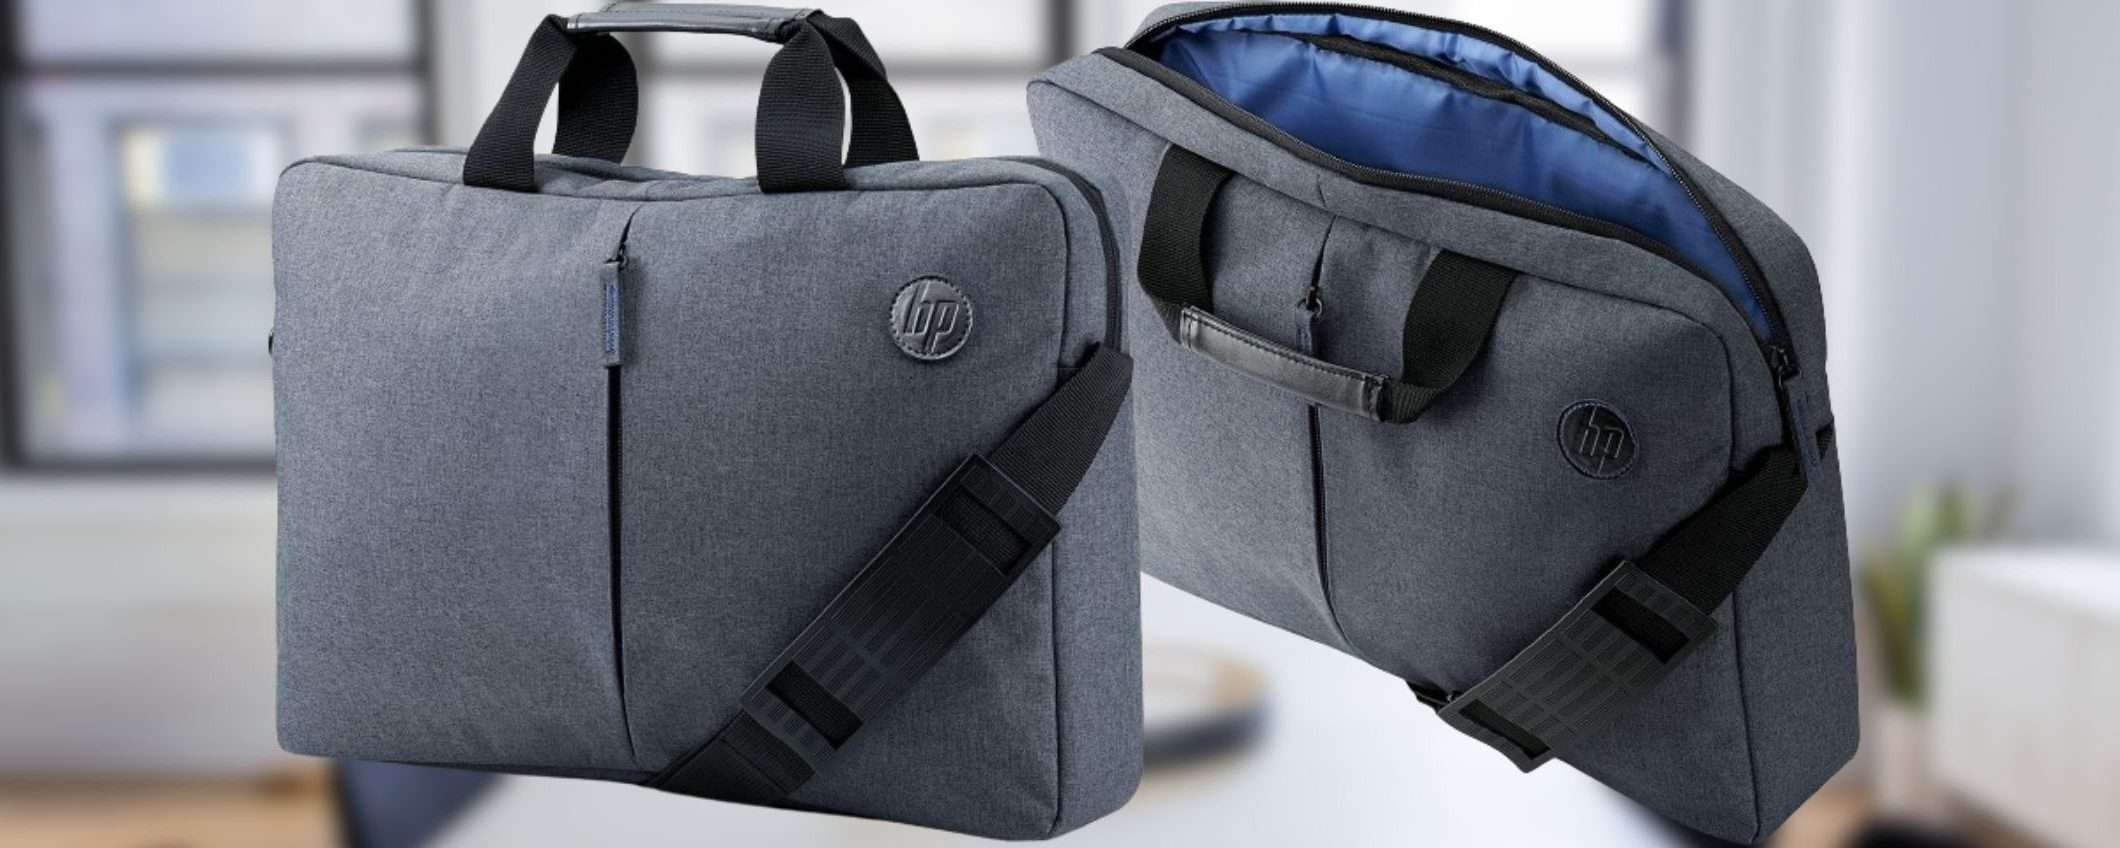 Da HP, un borsa porta PC di altissima qualità a prezzo SBRICIOLATO (11€)